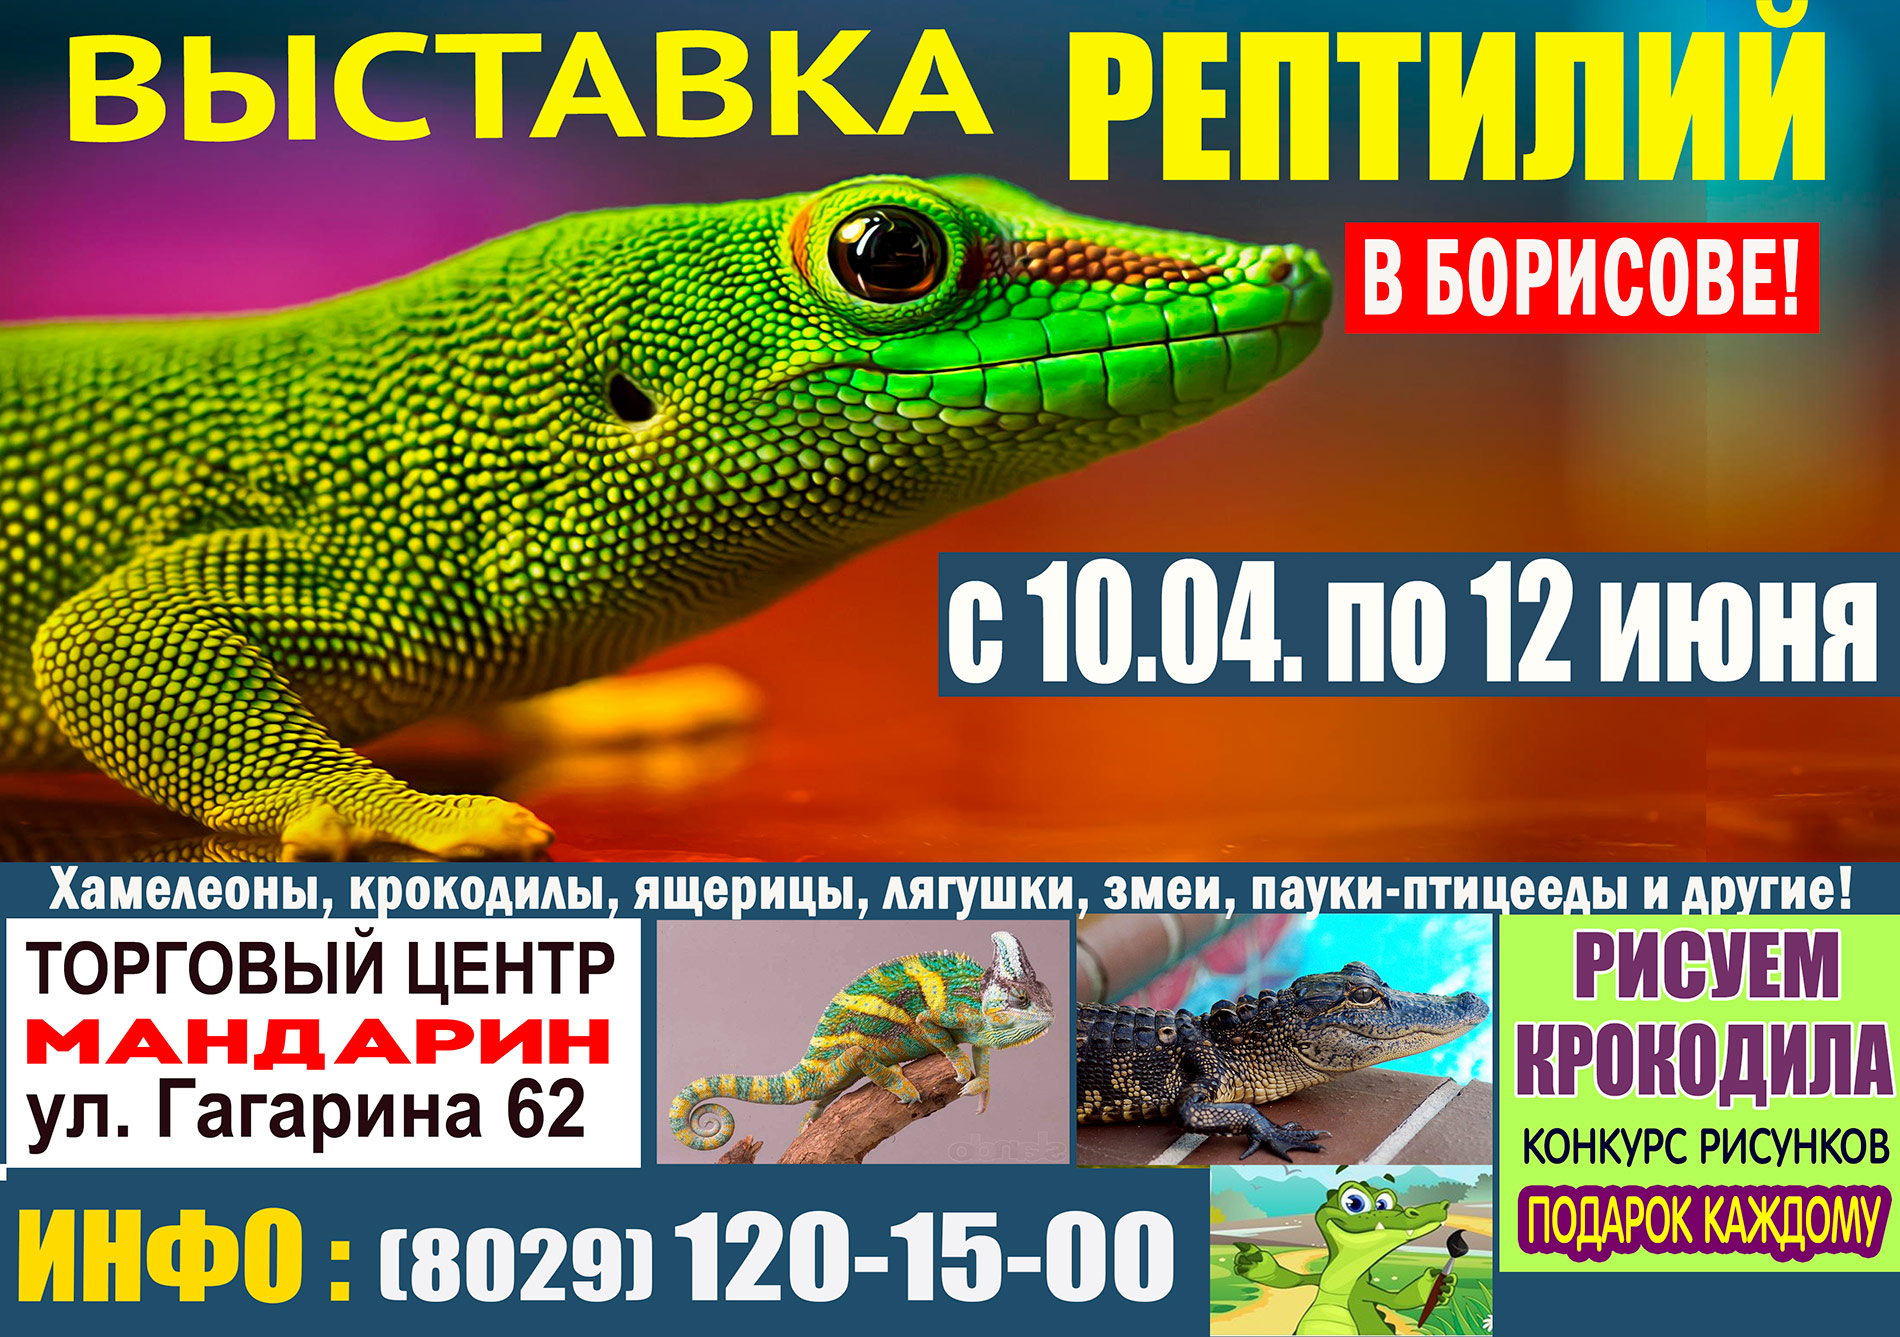 Крокодиловый хамелеон. Выставка рептилий Владивосток. Выставка ящериц. Выставка рептилий Абакан. Покровский красноярск выставка рептилий